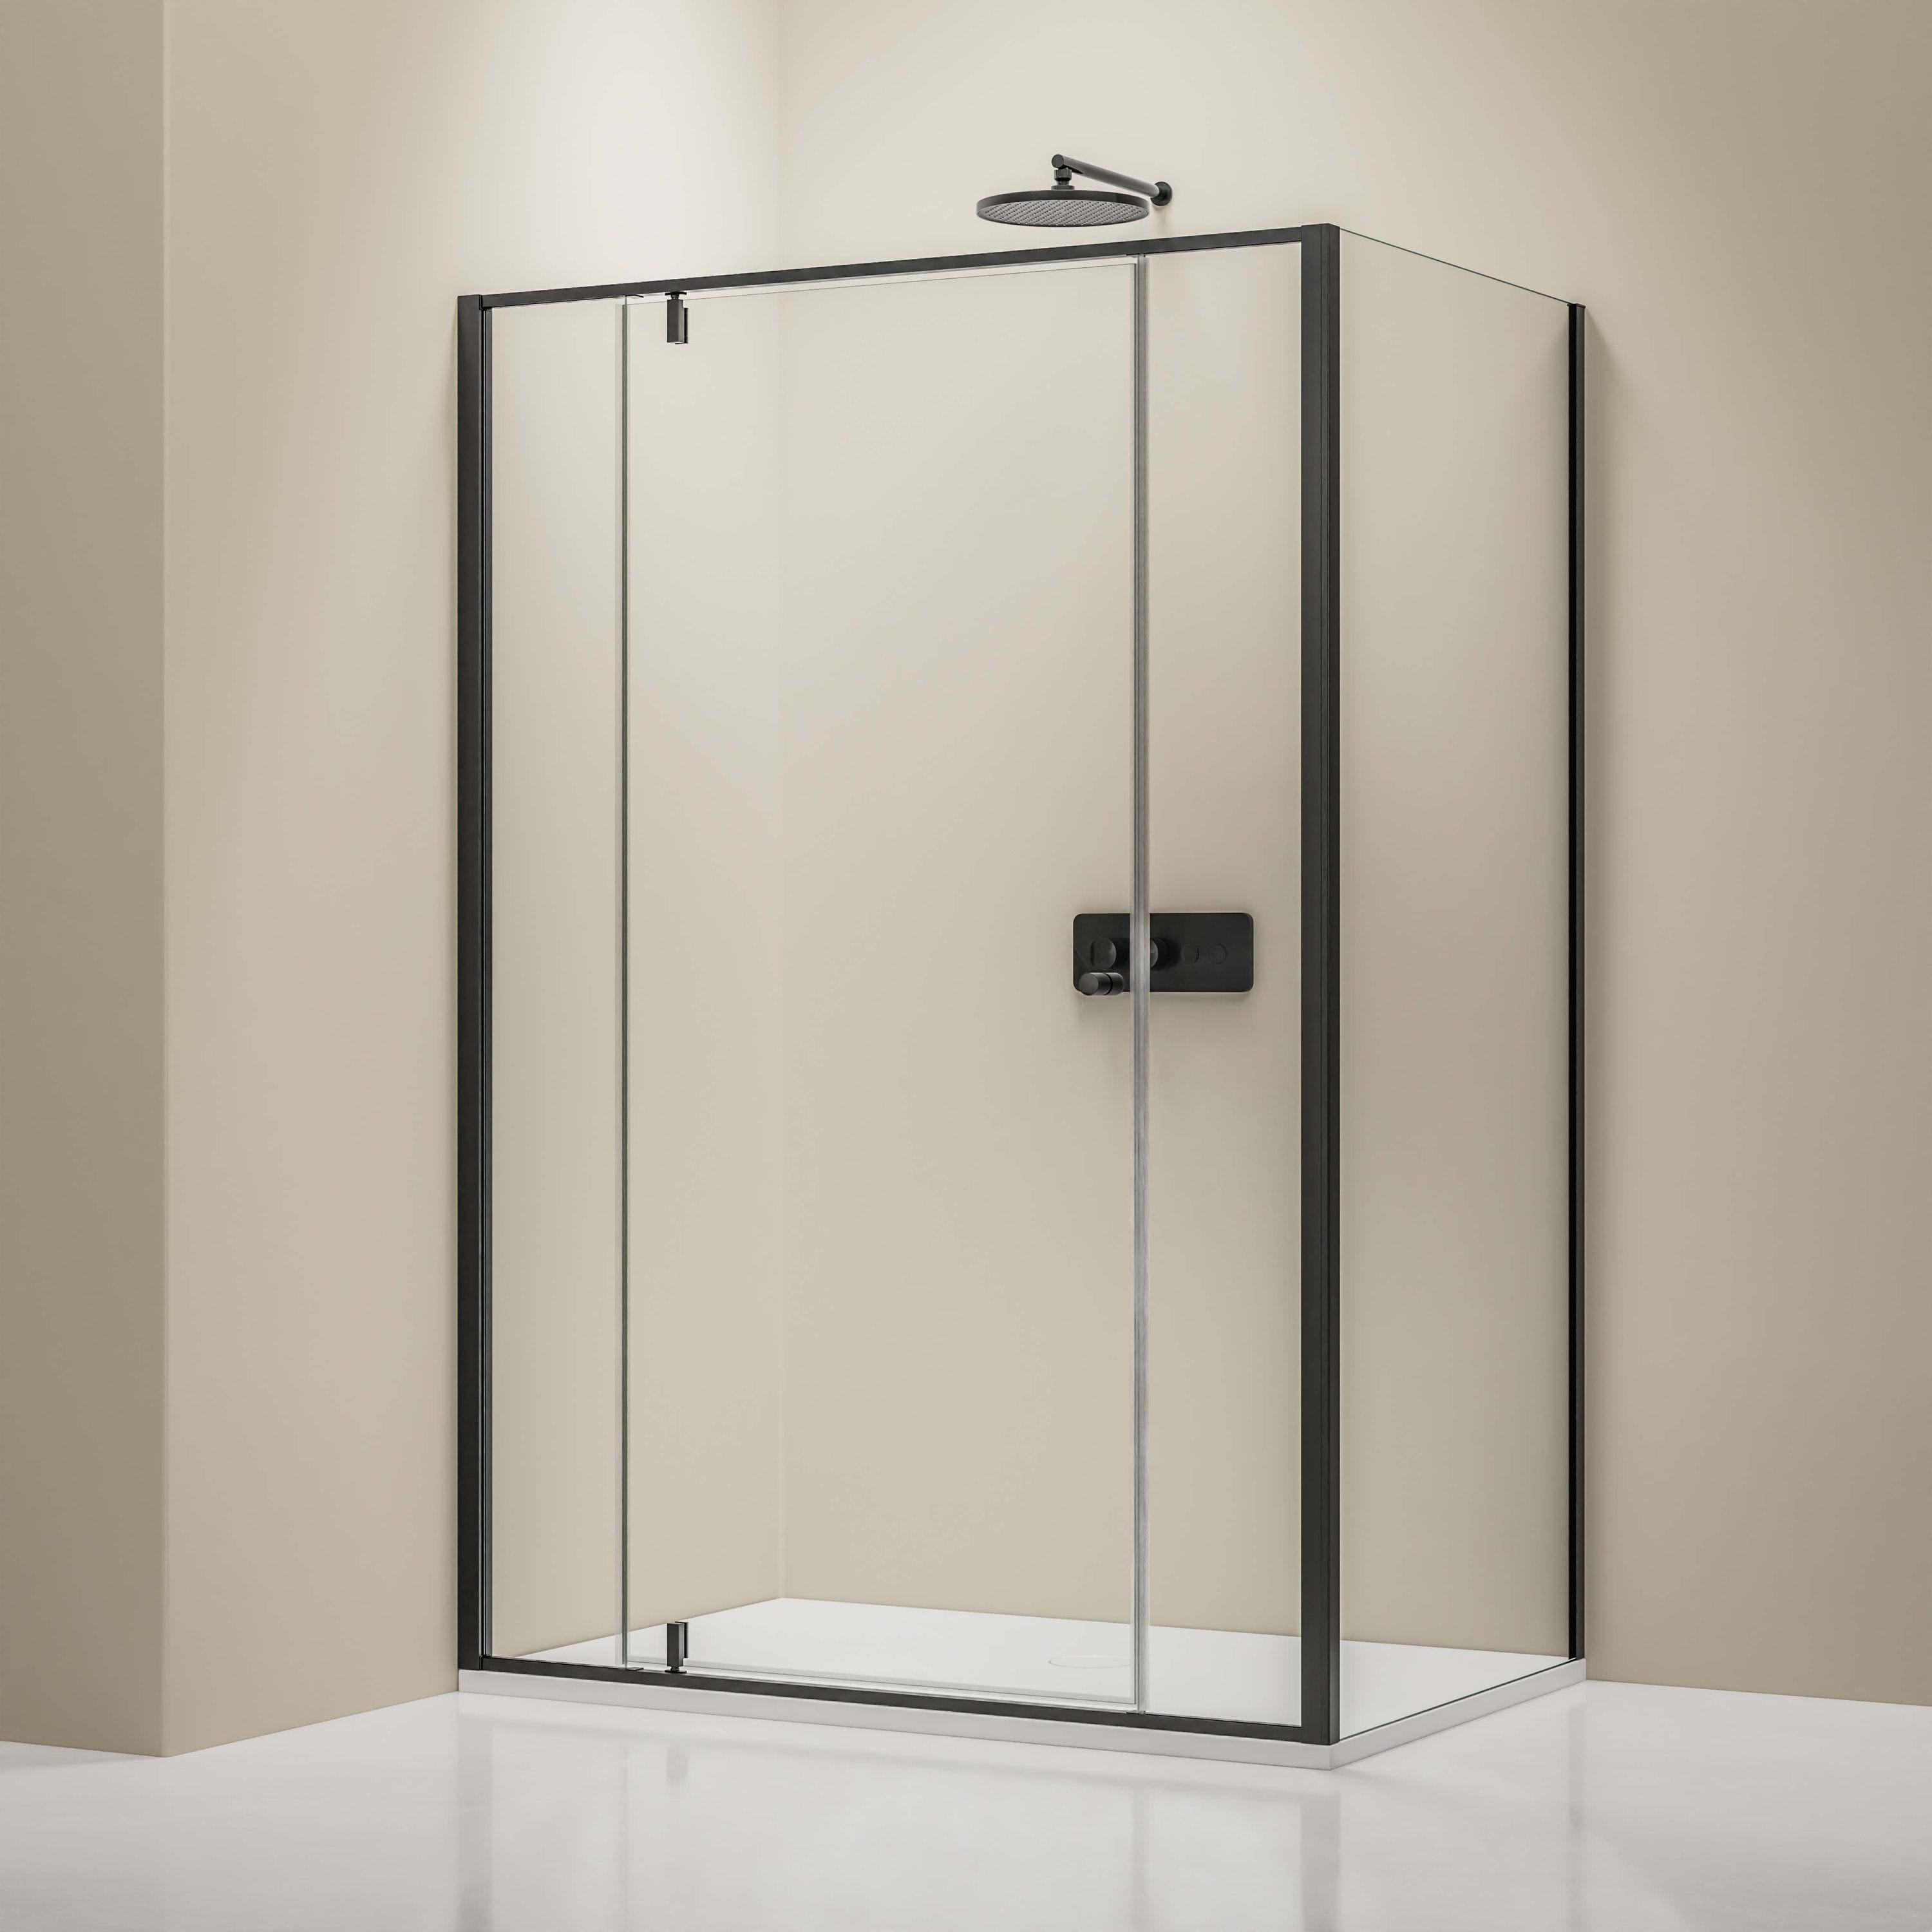 Paroi douche accès angle 2 portes BASIC latéral 90 cm, profilés noirs